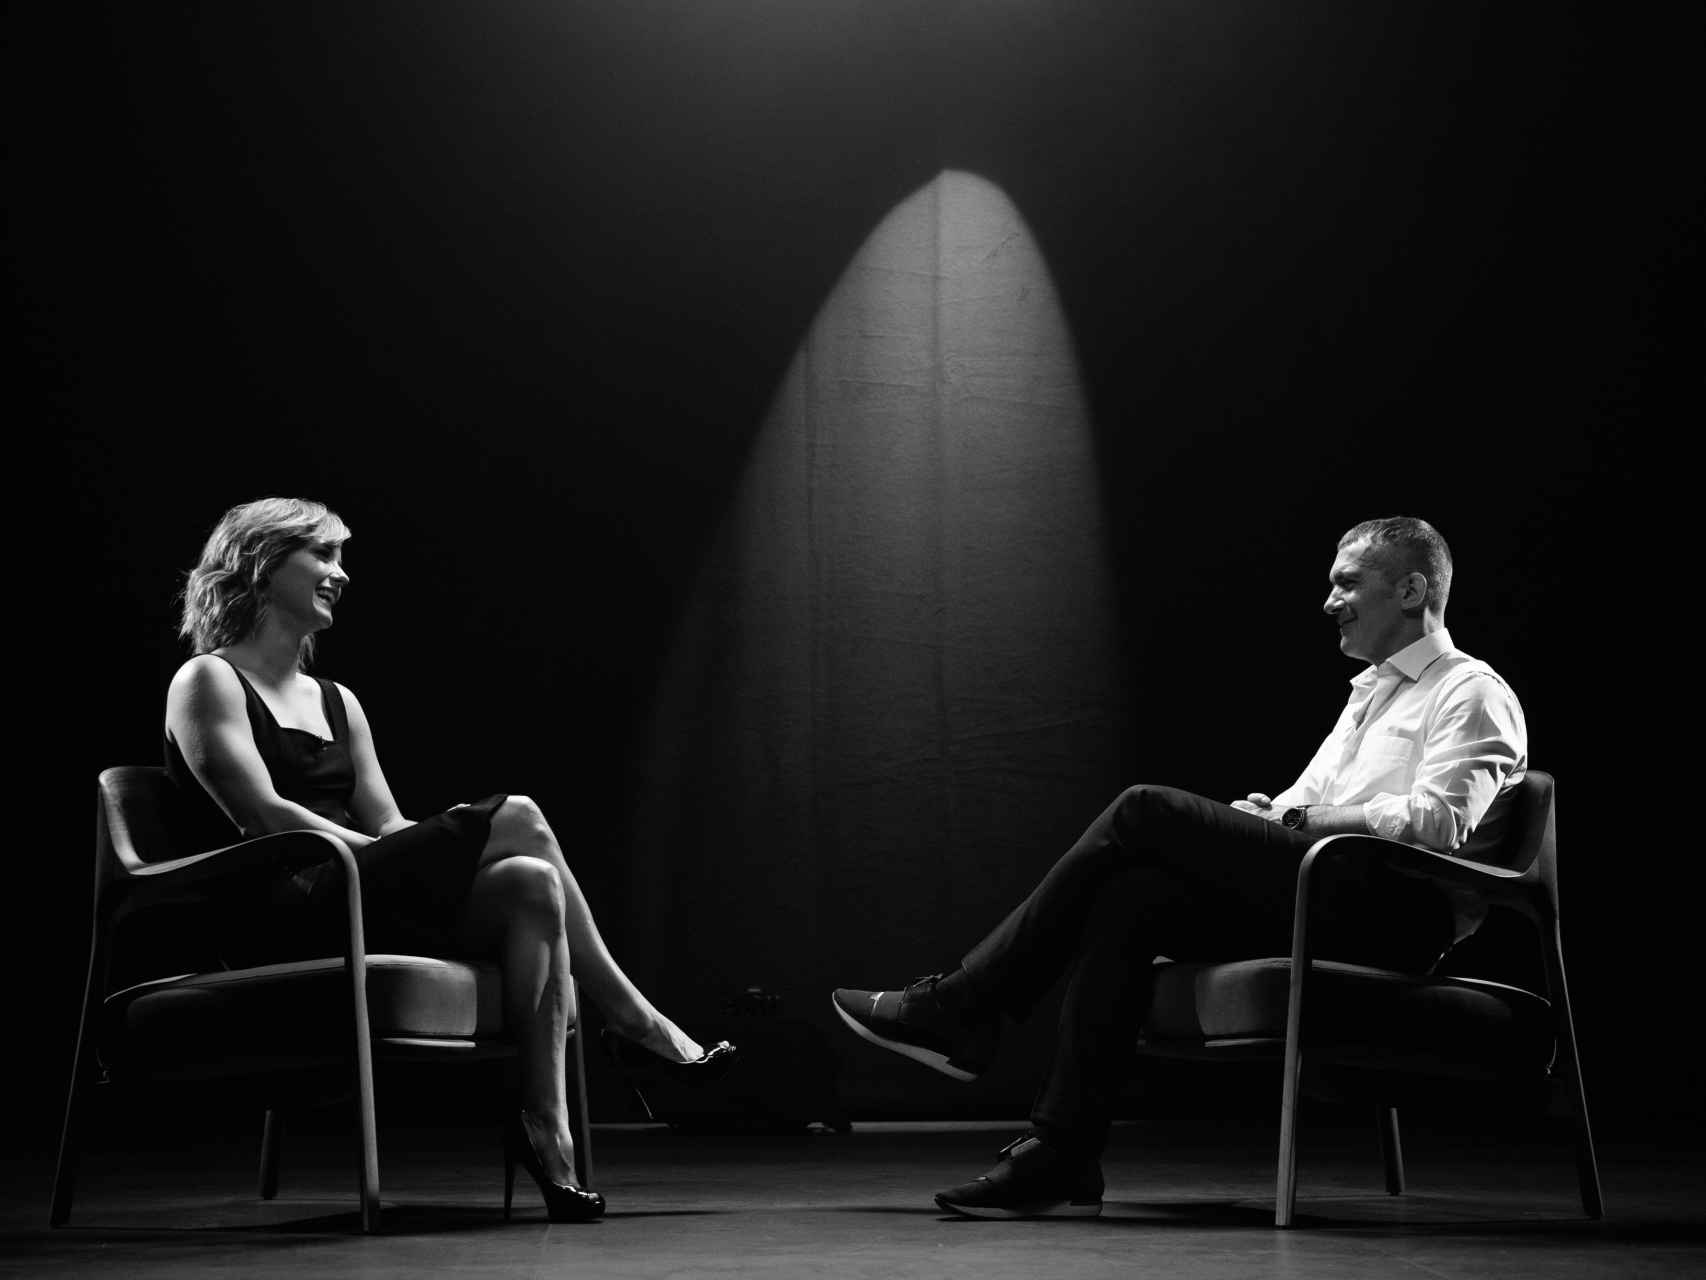 María Casado y Antonio Banderas durante su entrevista en 'Escena en blanco y negro'.